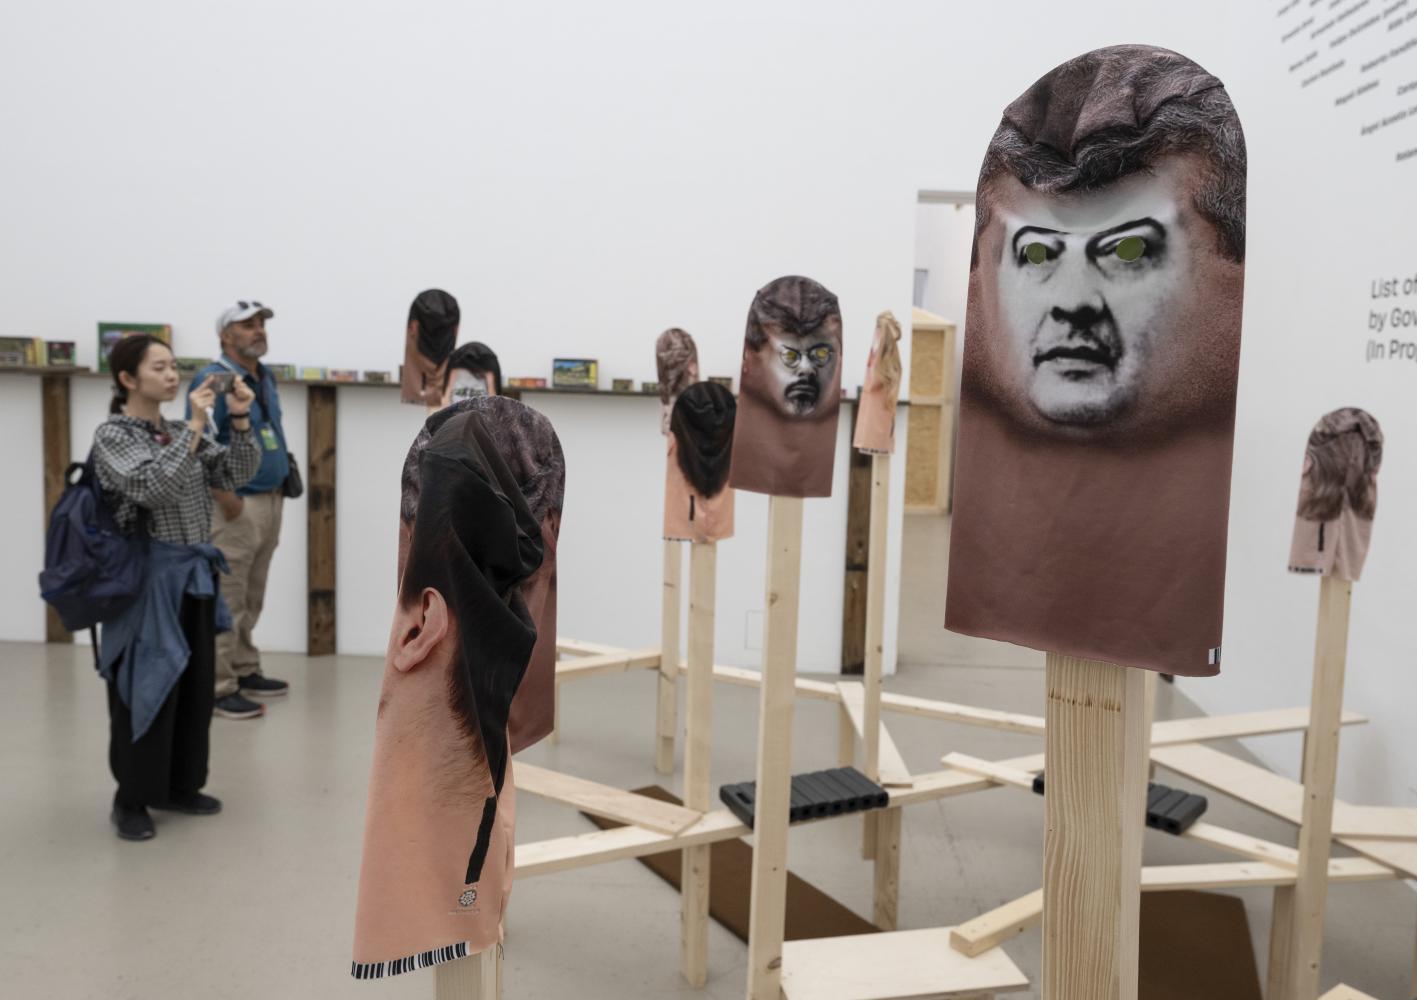 Besucher fotografieren eine Installation der kubanischen Gruppe Instar, die sich mit dem Schicksal kubanischer Regimegegner und Aktivisten befasst